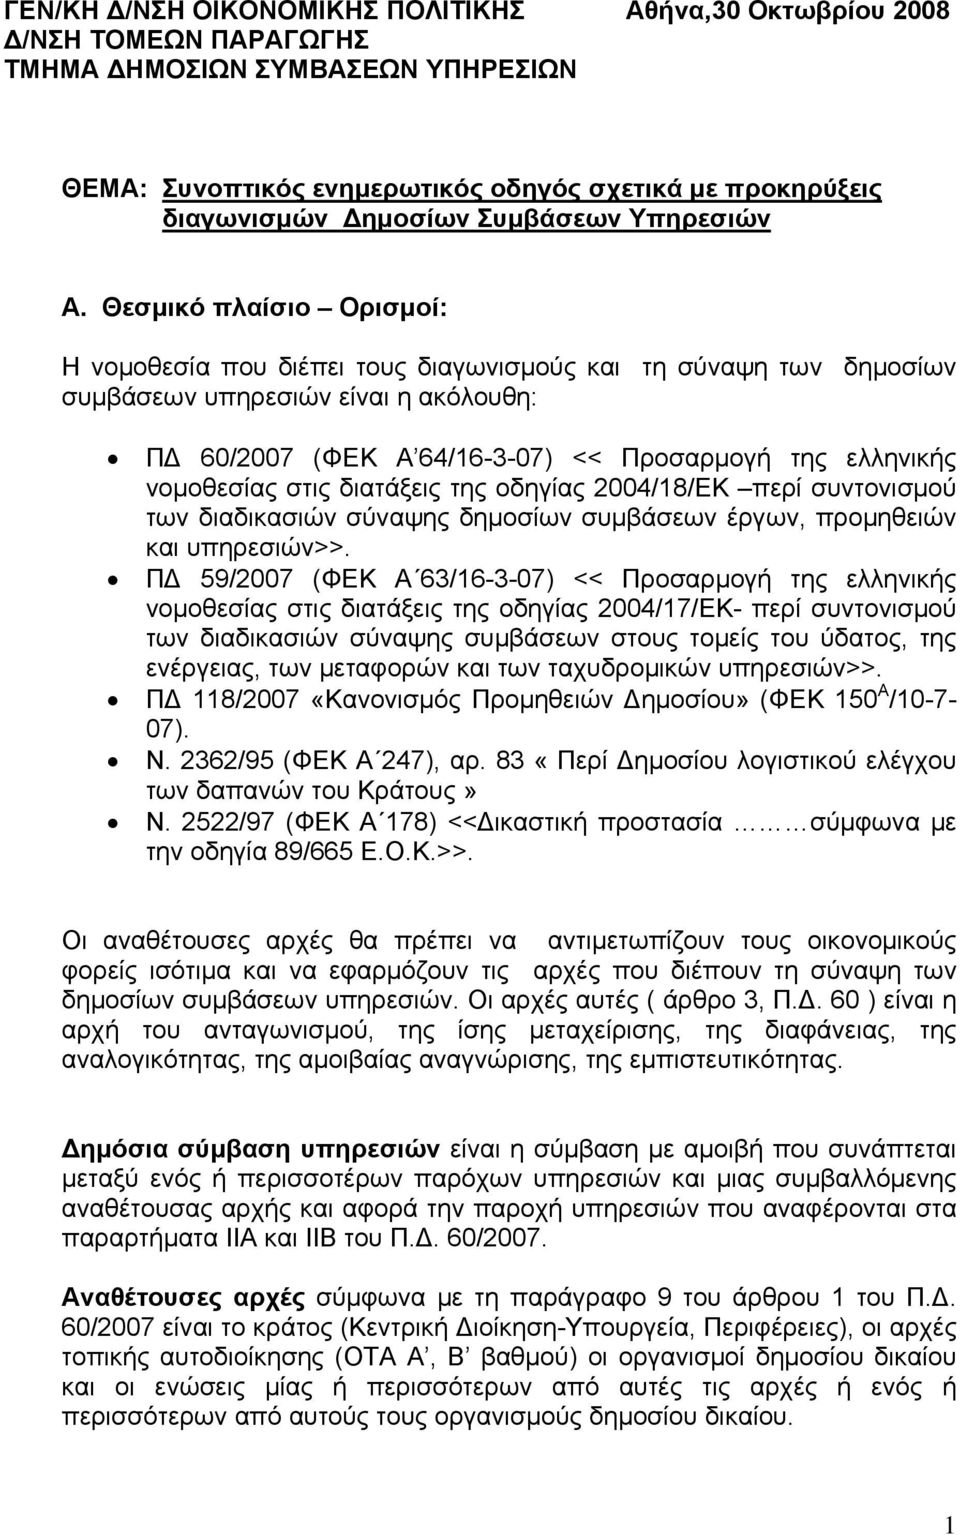 Θεσμικό πλαίσιο Ορισμοί: Η νομοθεσία που διέπει τους διαγωνισμούς και τη σύναψη των δημοσίων συμβάσεων υπηρεσιών είναι η ακόλουθη: ΠΔ 60/2007 (ΦΕΚ Α 64/16-3-07) << Προσαρμογή της ελληνικής νομοθεσίας